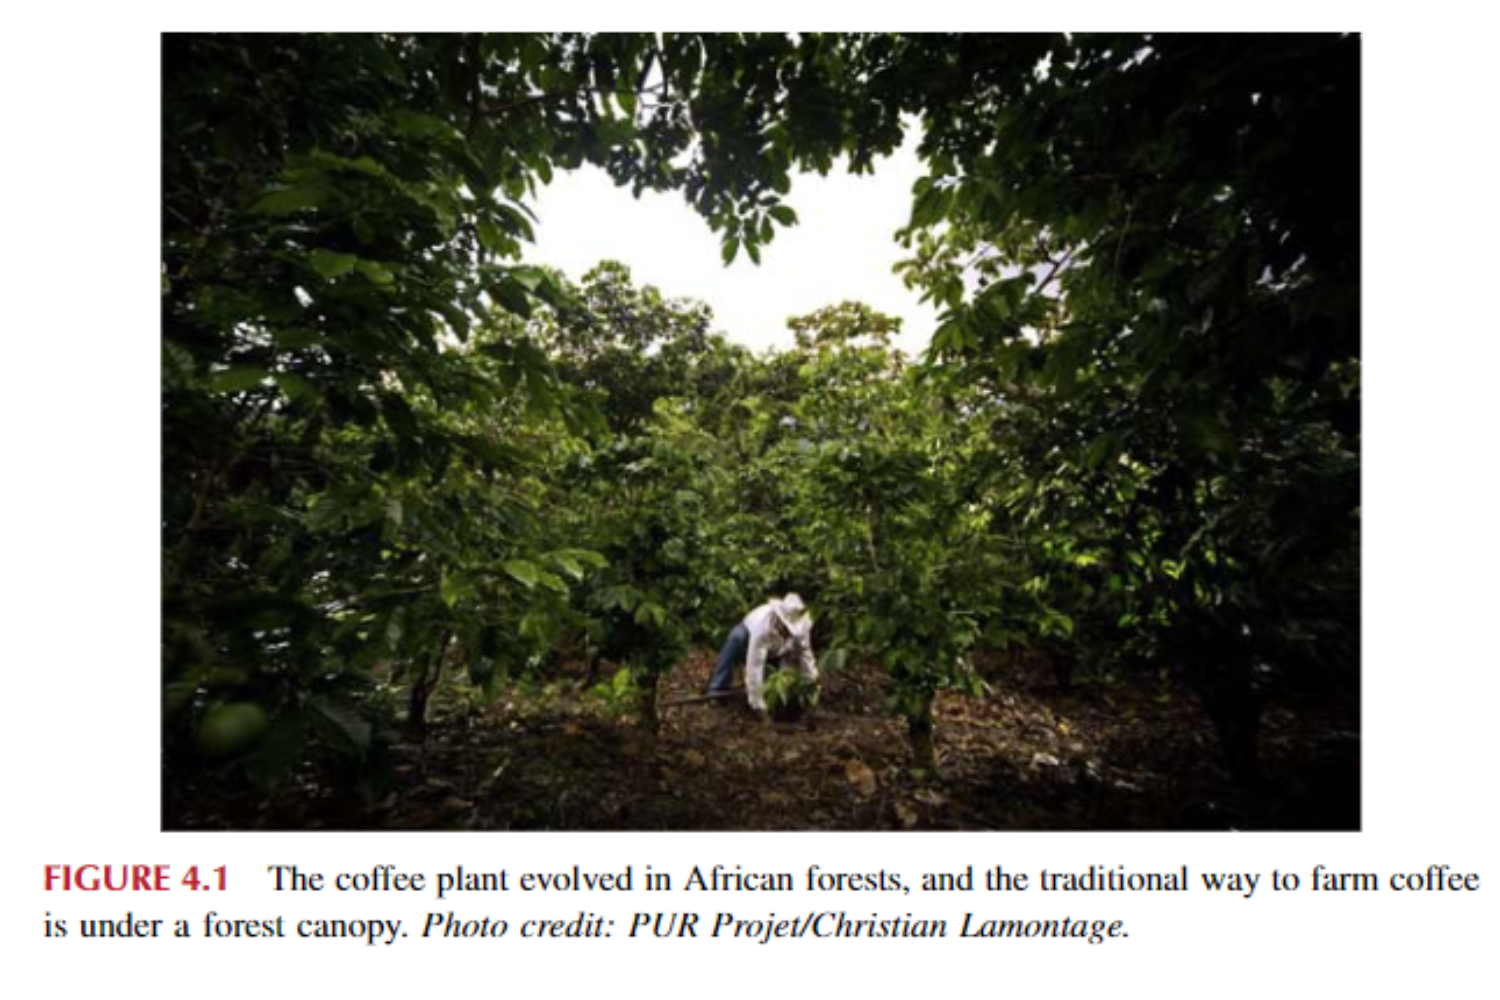 Cây cà phê phát triển ở các khu rừng châu Phi và cách trồng cà phê truyền thống là dưới tán rừng